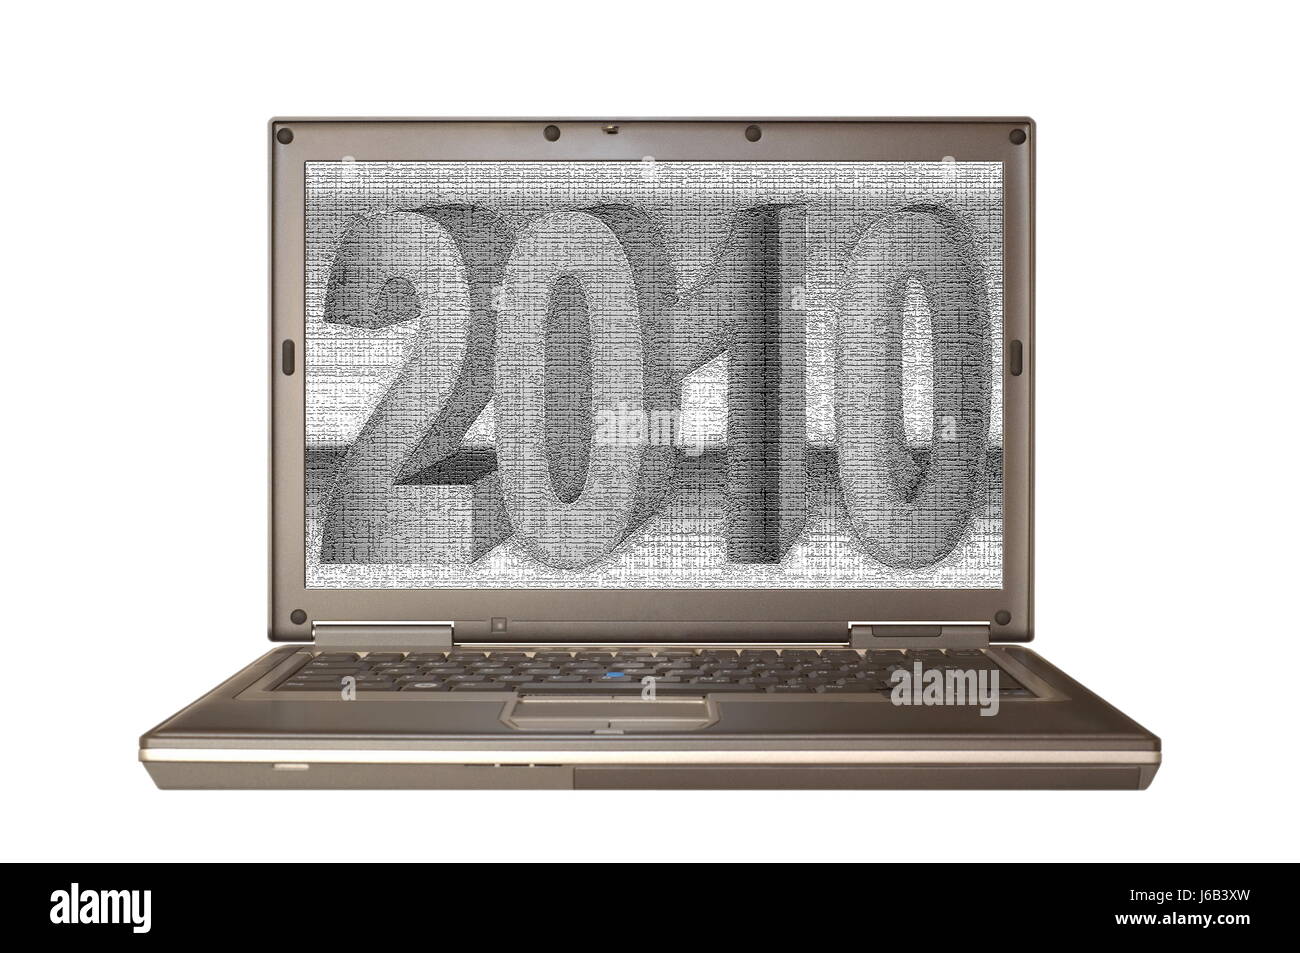 Ordinateur portable ordinateurs portables PC nouvelle année s jour silvester nouvelle année années Banque D'Images